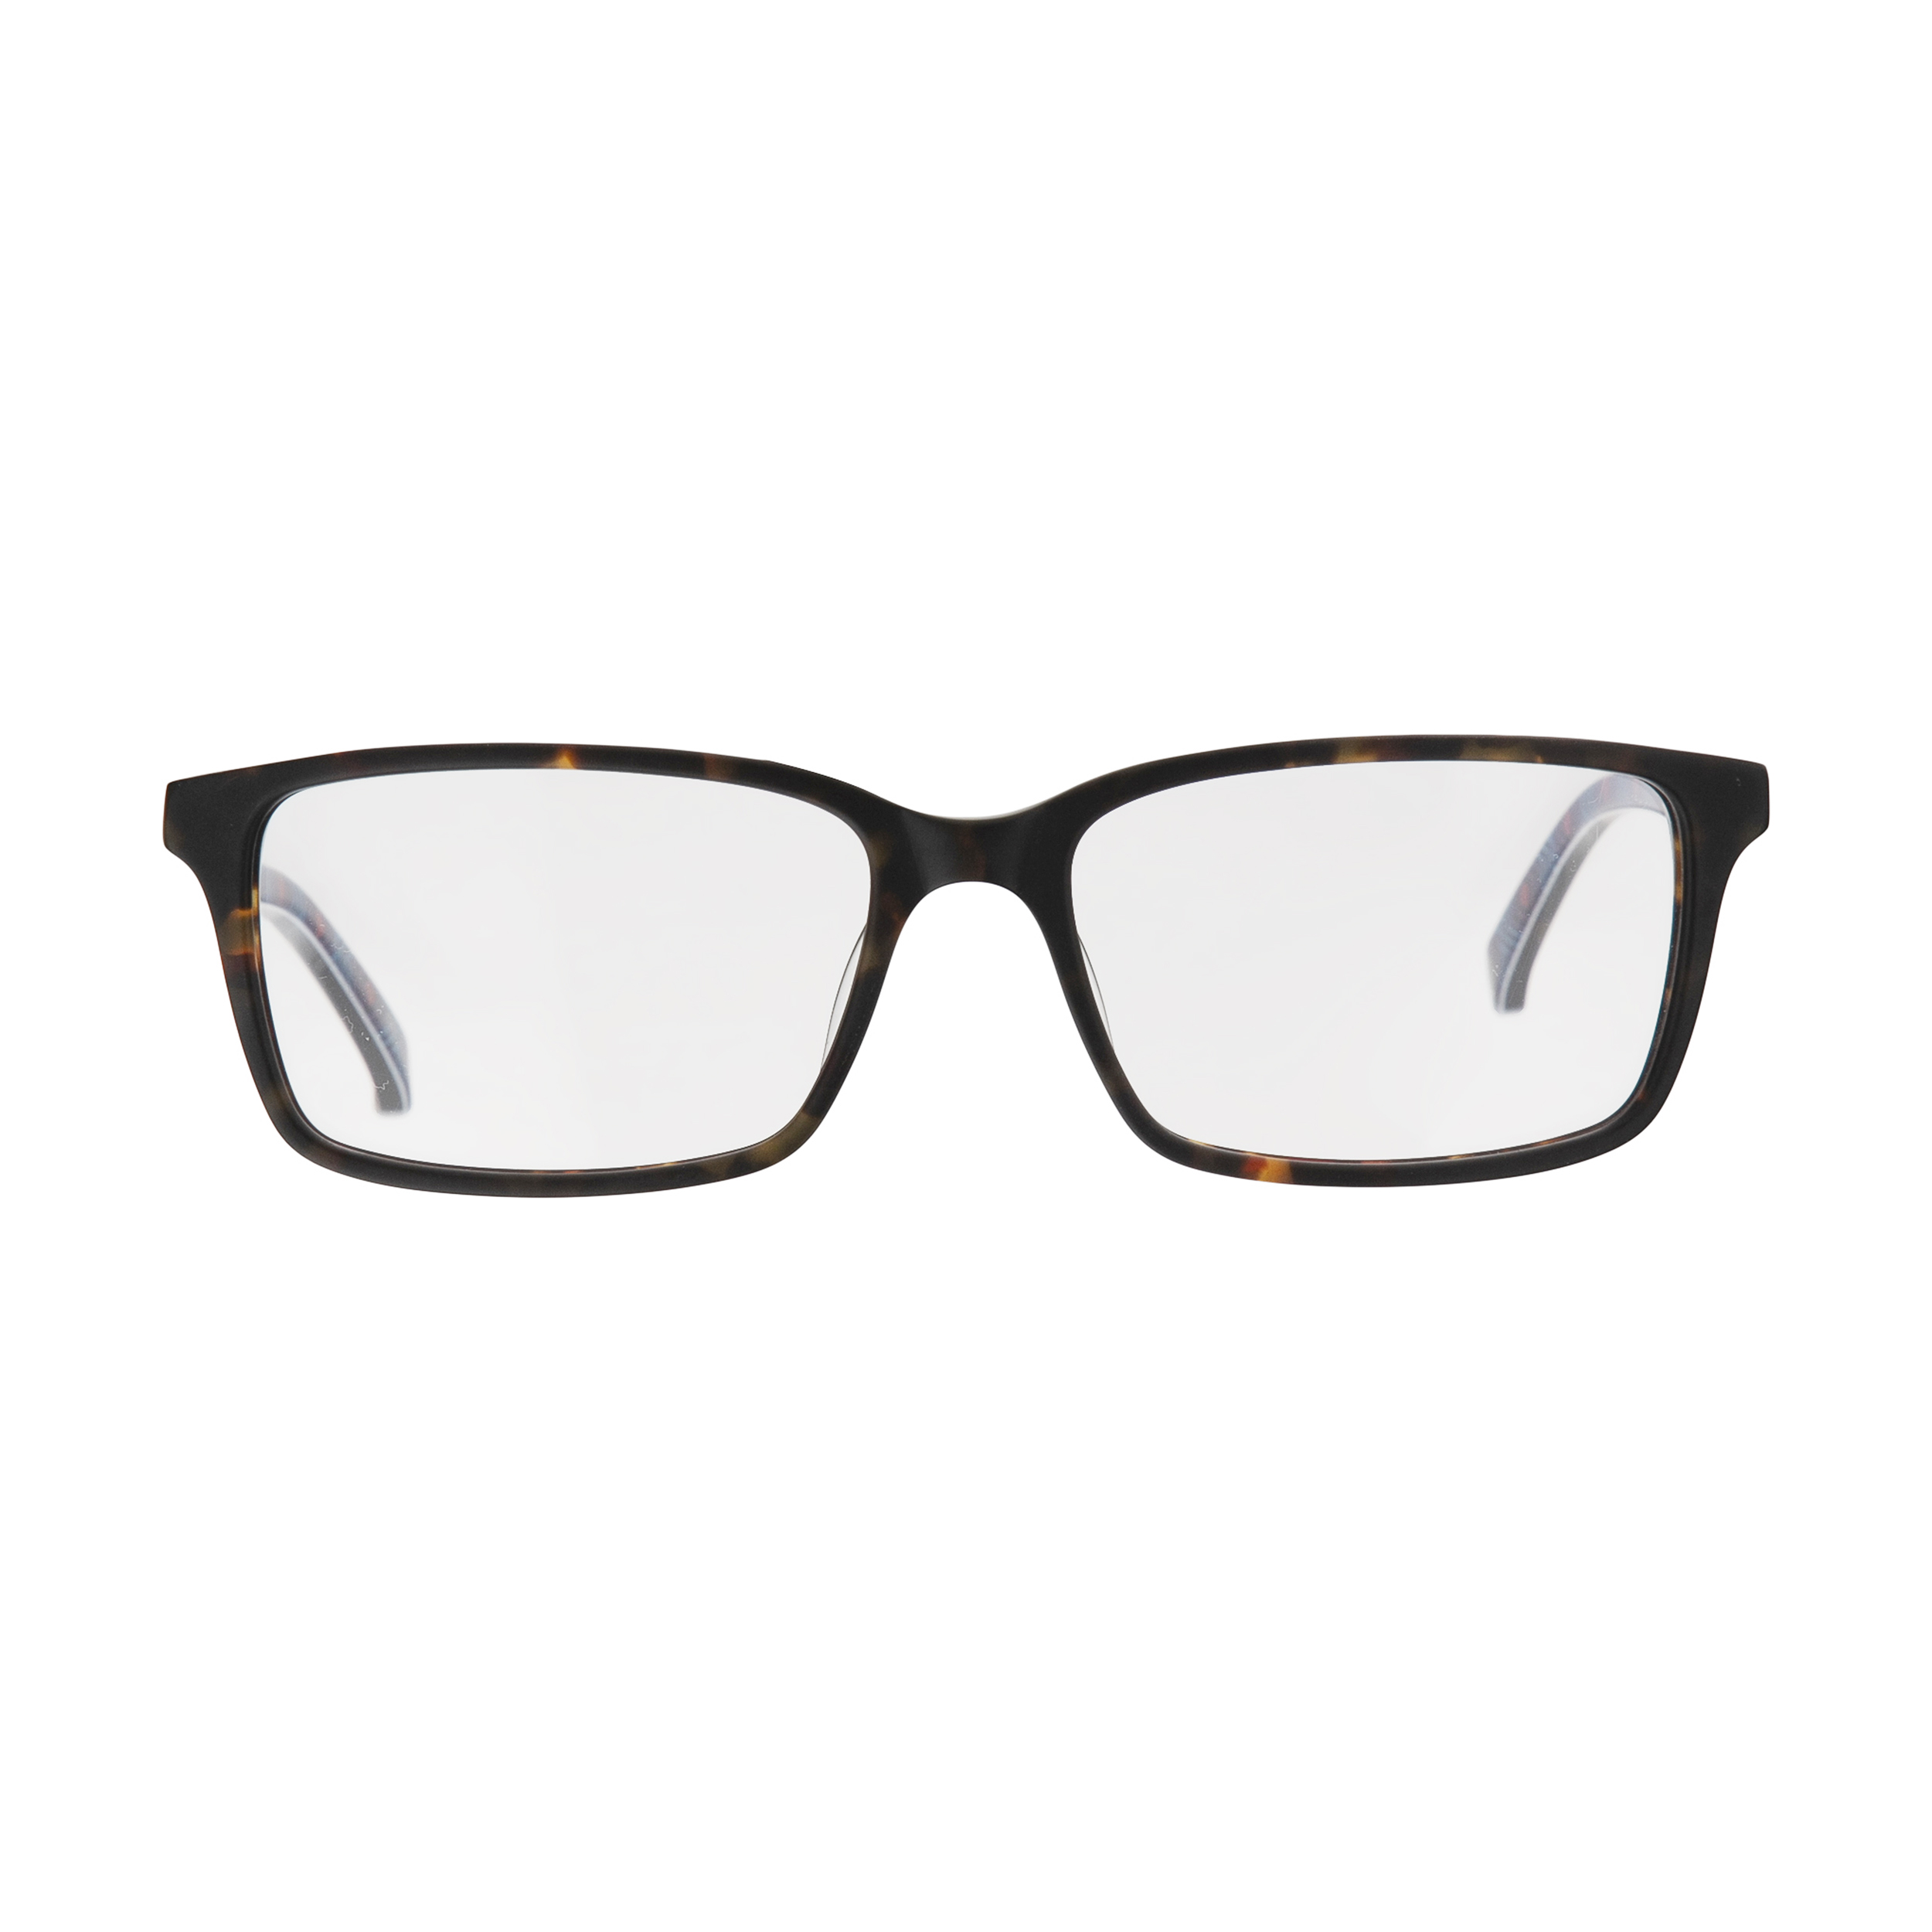 عینک طبی زنانه تد بیکر مدل TB 8174 145